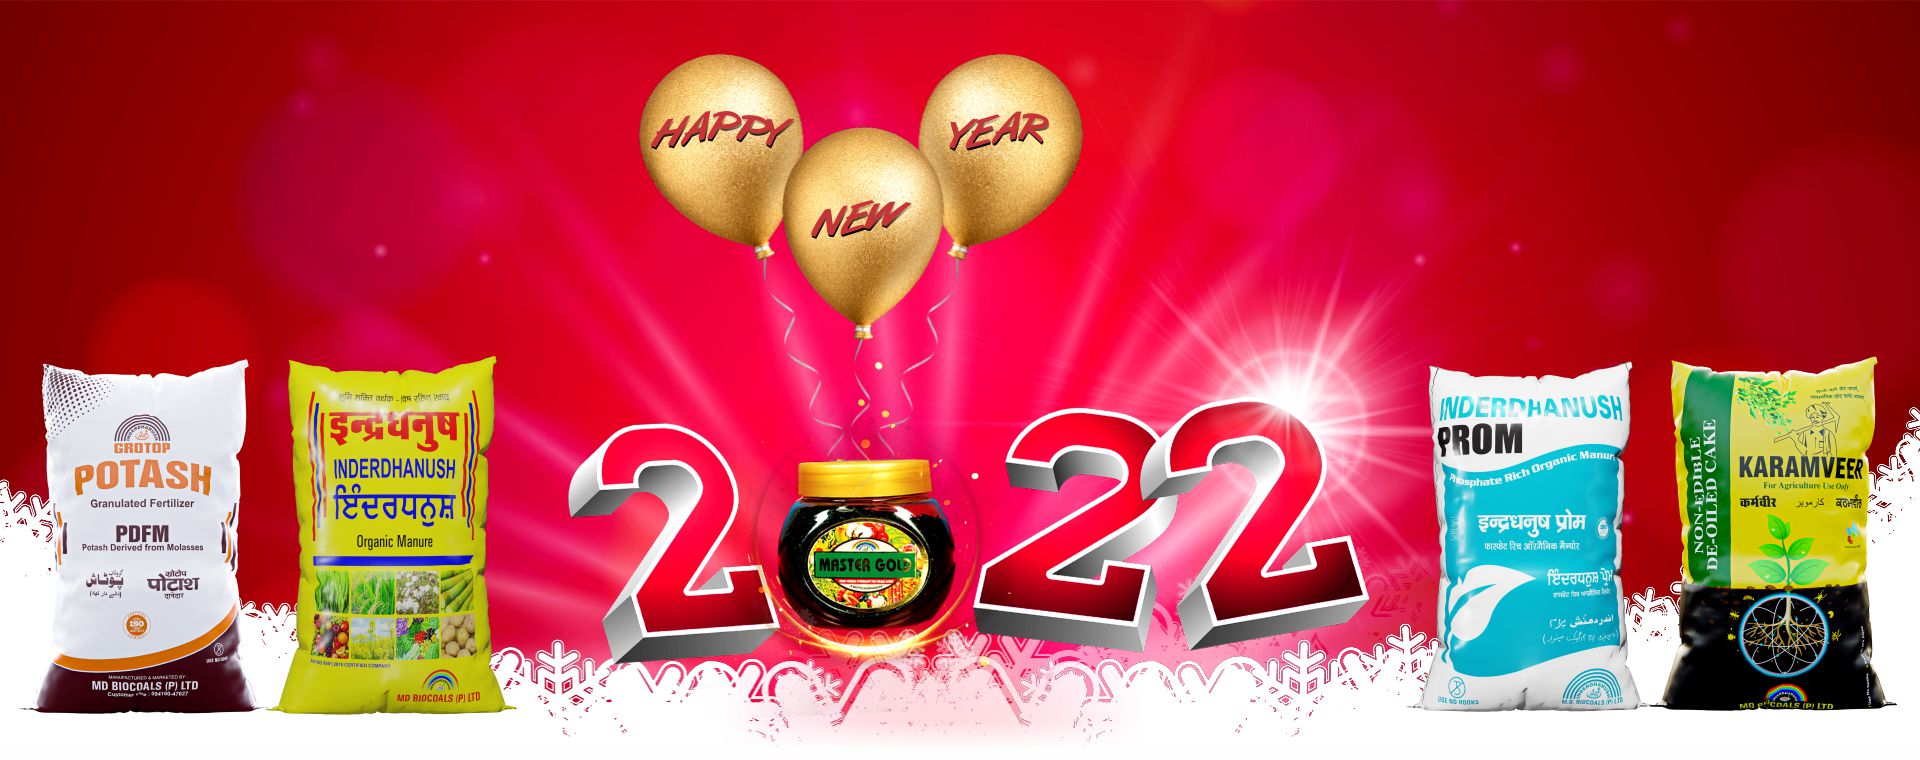 Celebrating New Year 2022